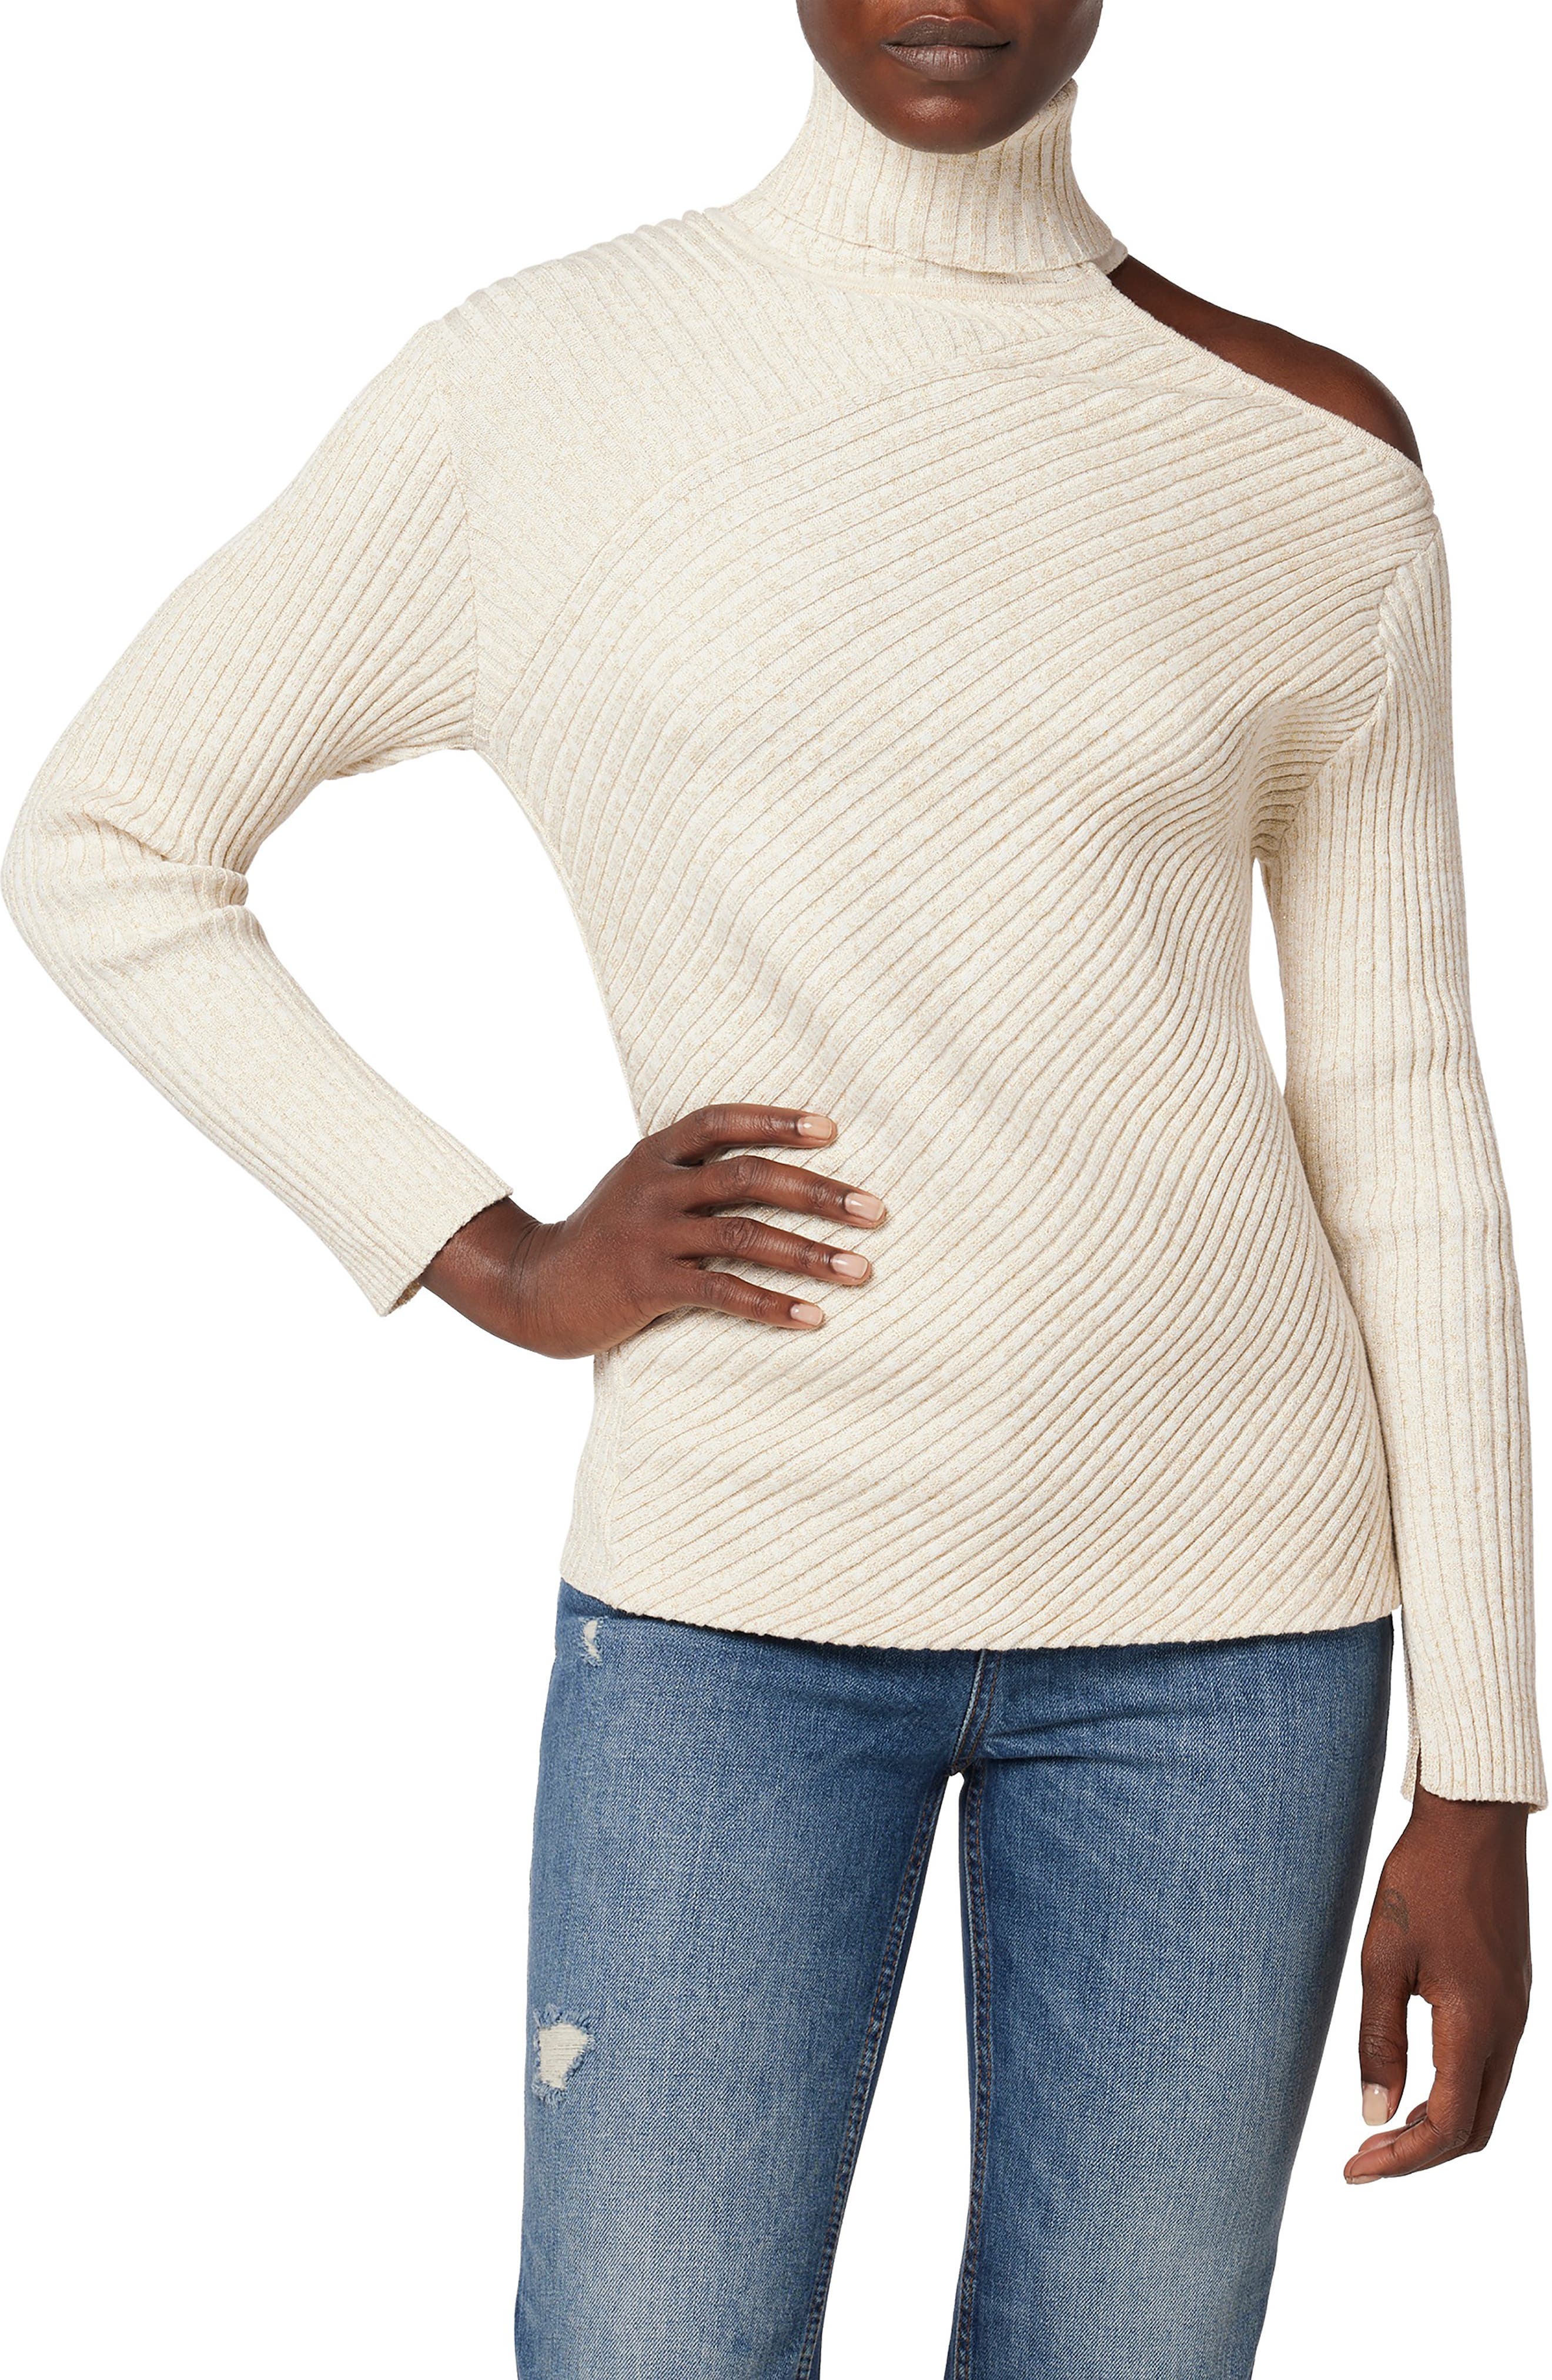 Enya White Turtleneck Sweater